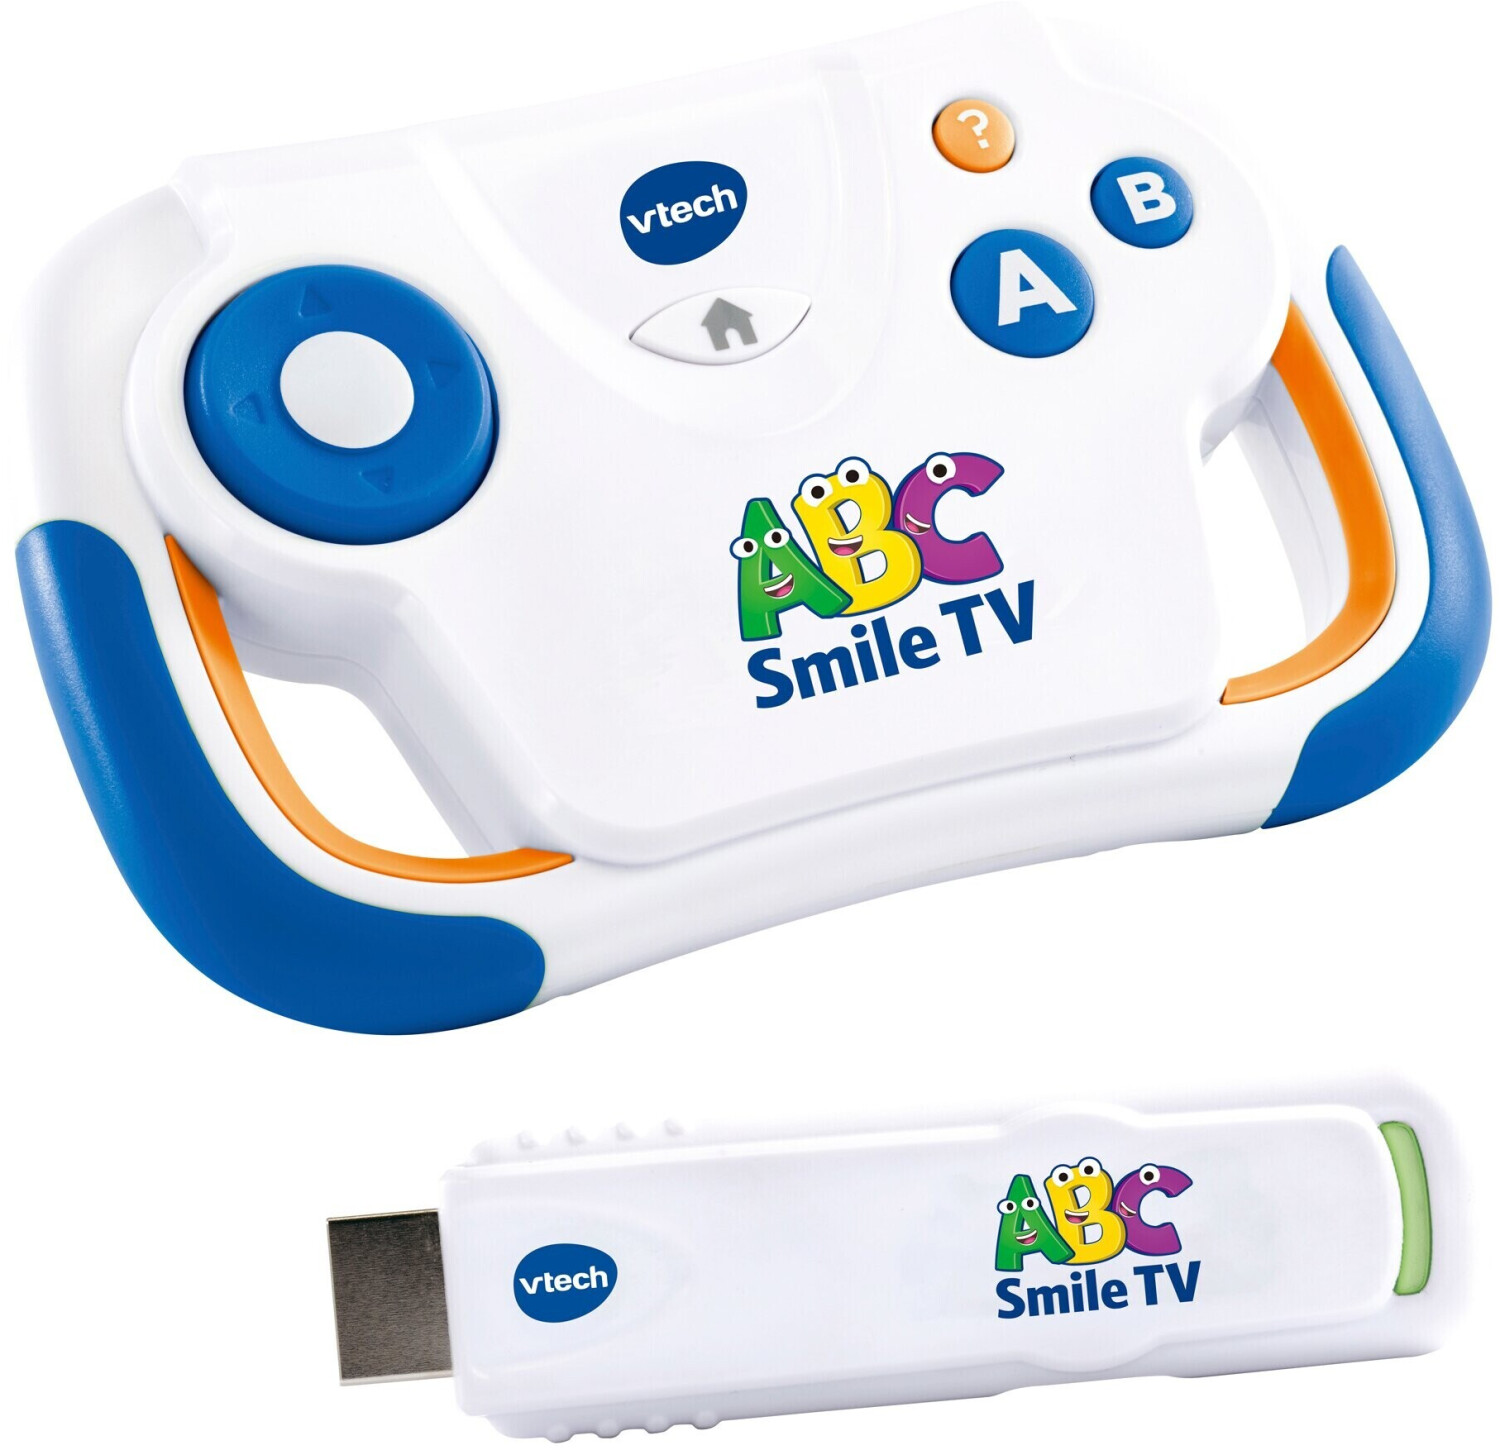 Console TV éducative Pat'Patrouille - ABC Smile TV VTech : King Jouet,  Ordinateurs et jeux interactifs VTech - Jeux et jouets éducatifs